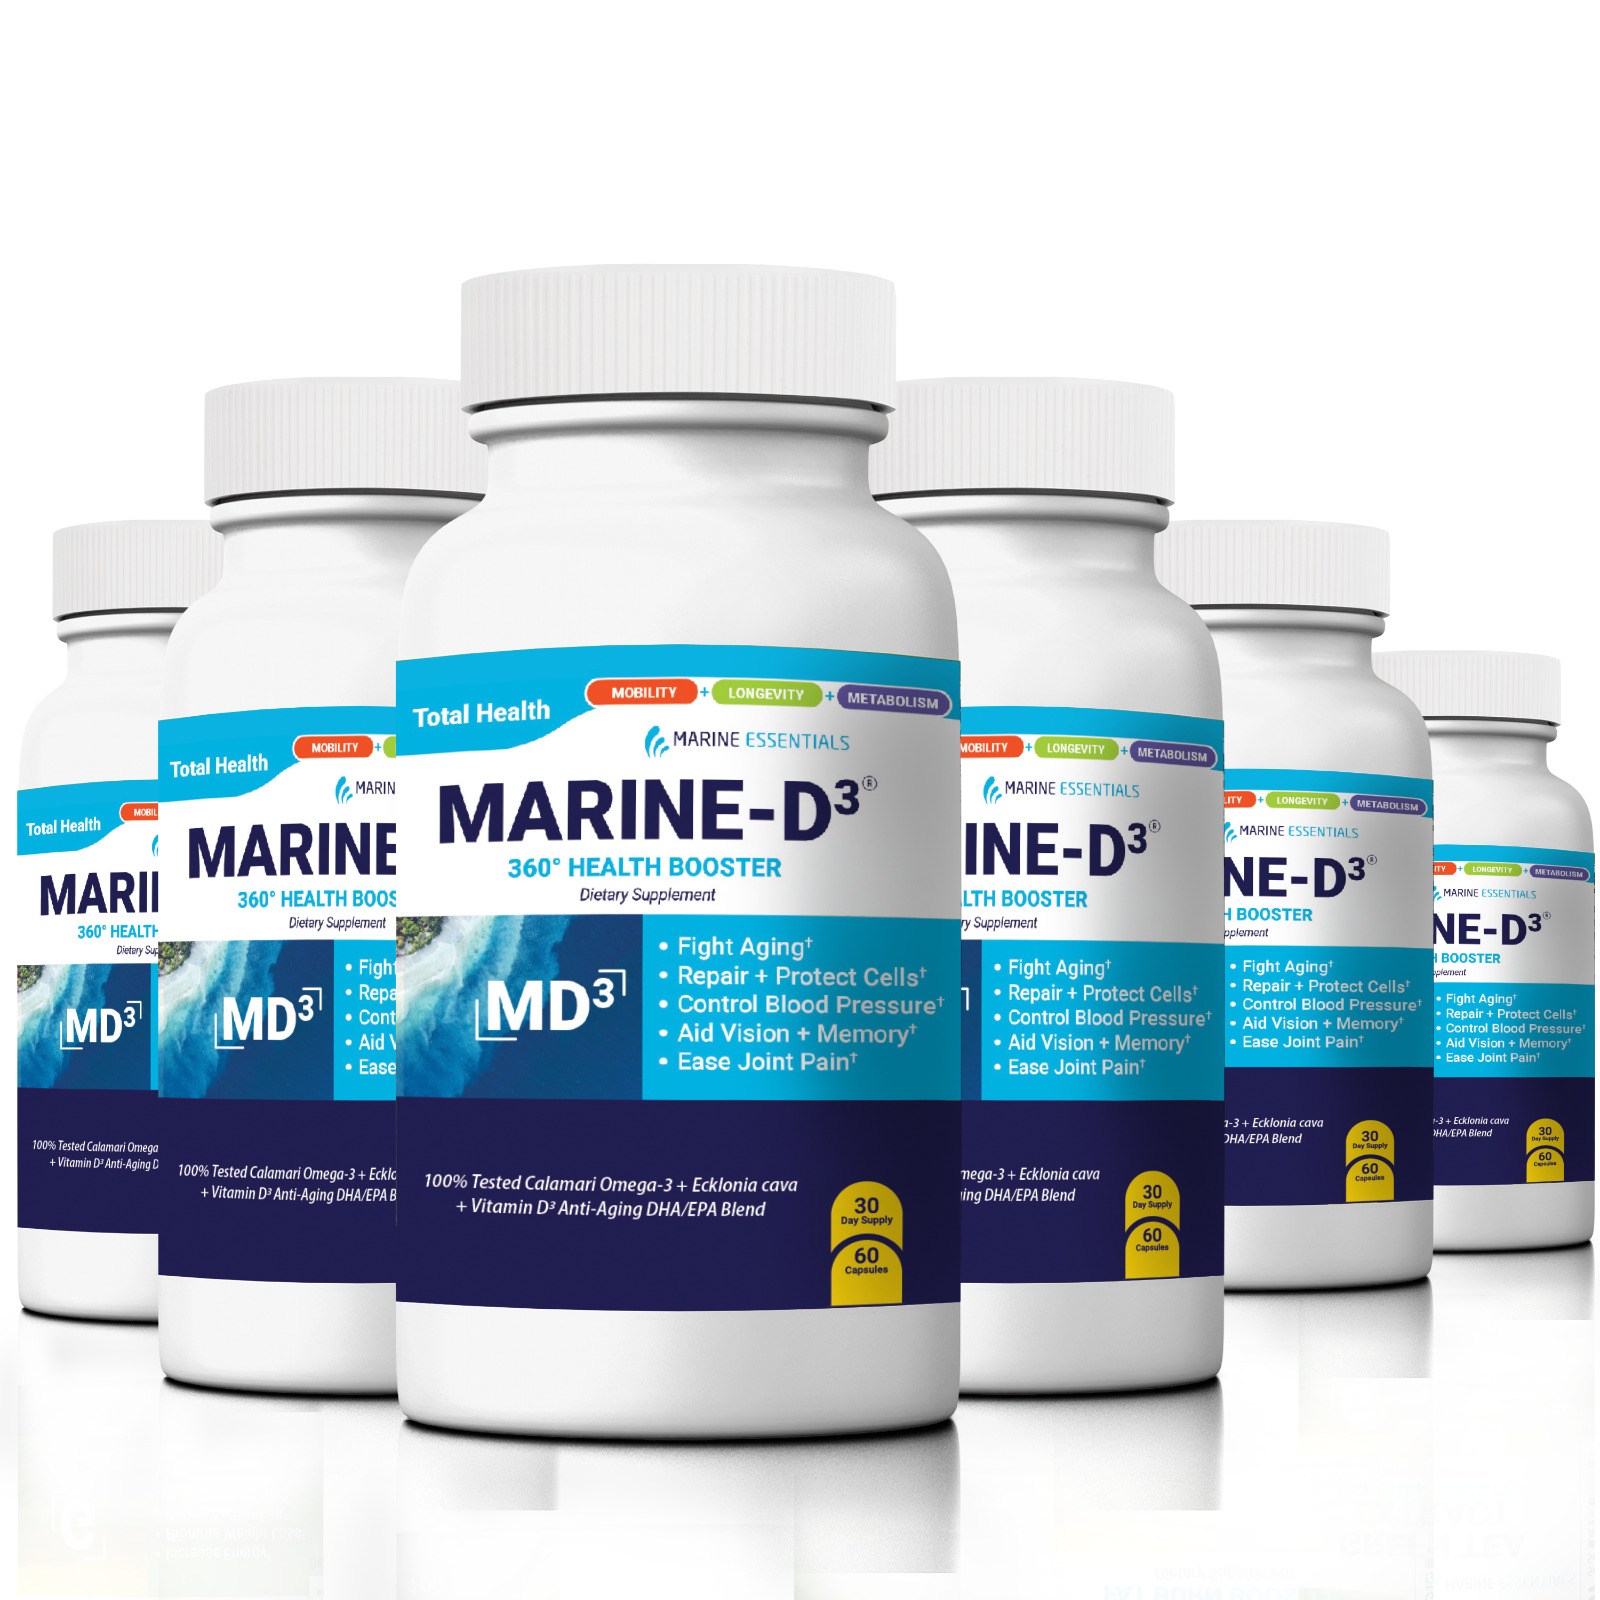 Marine Essentials | Marine-D3 | Anti-Aging | Omega-3 | 6 Bottles (360 Capsules)